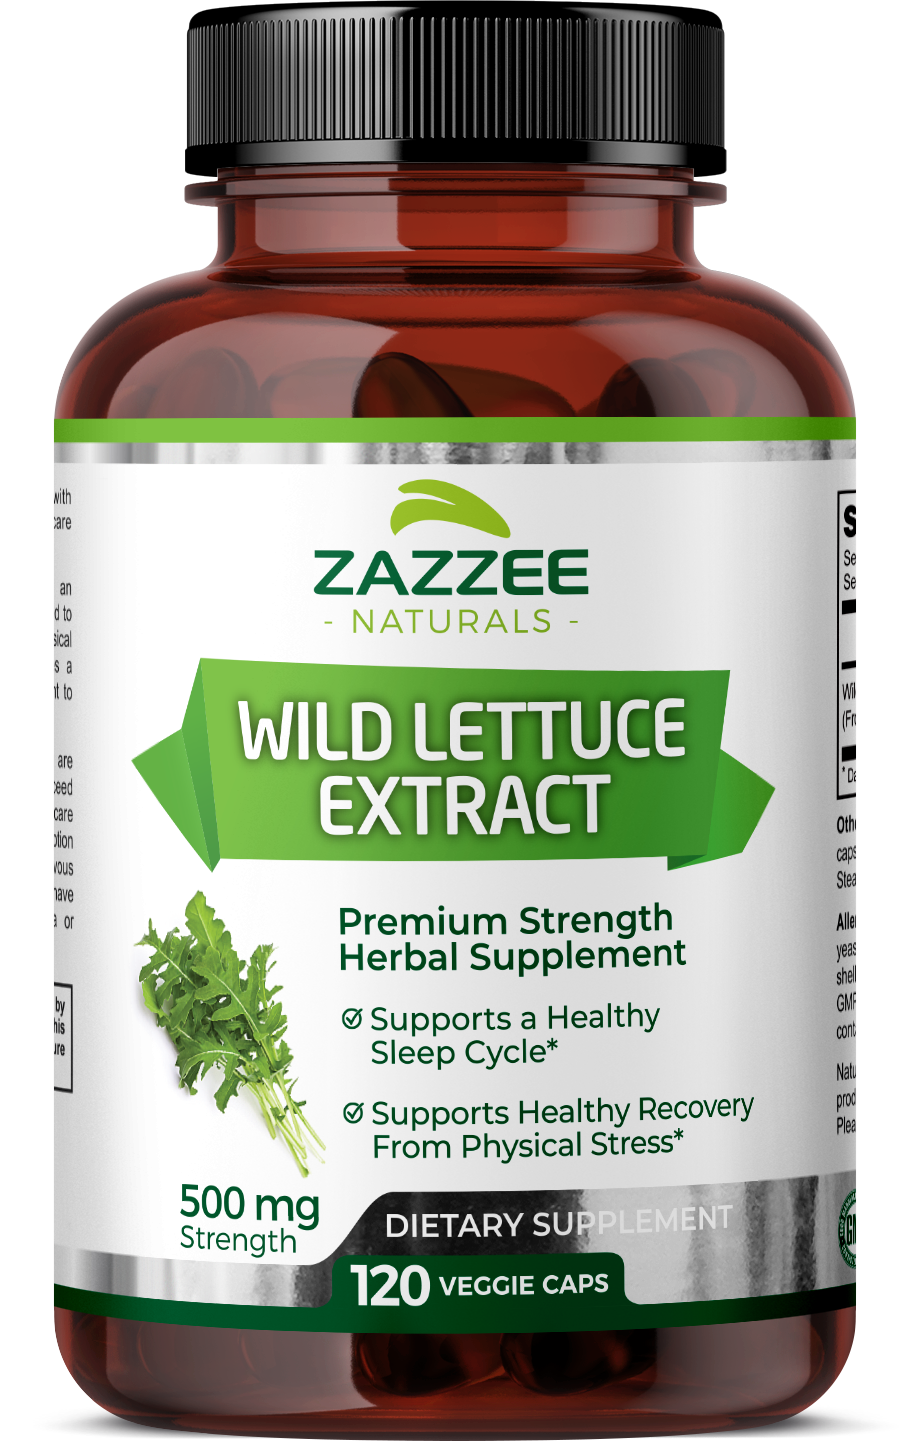 Wild Lettuce Extract